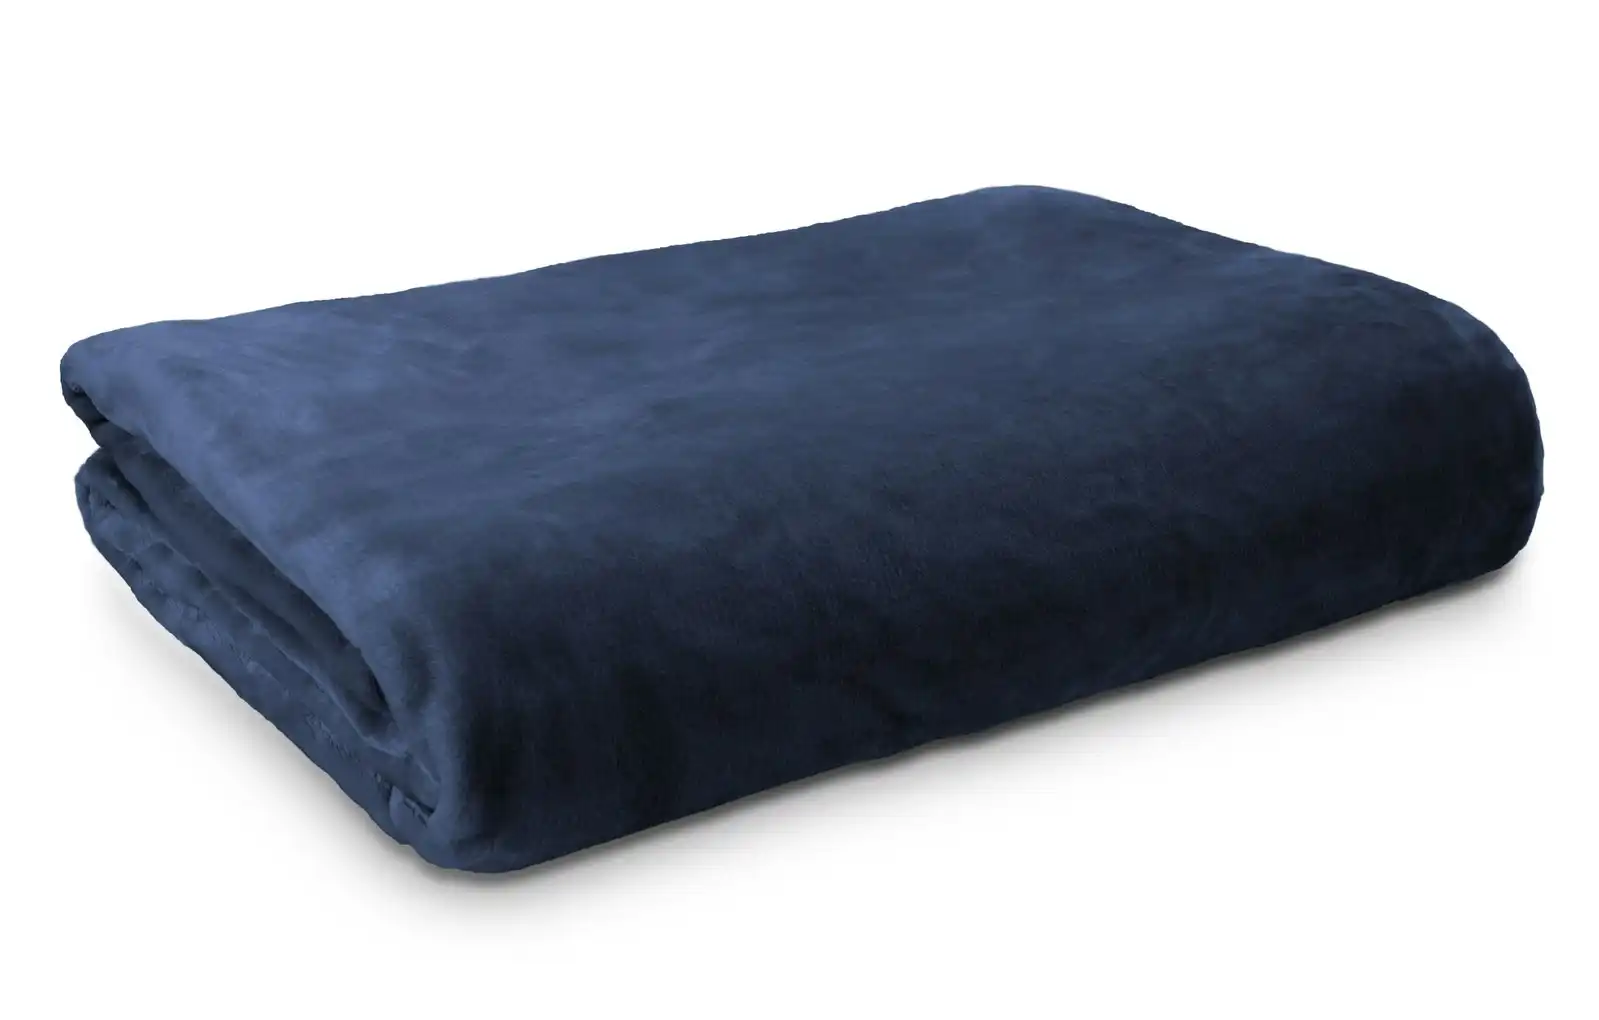 Ardor Boudoir King Single Bed Lucia Luxury Plush Velvet Blanket Bedding Navy